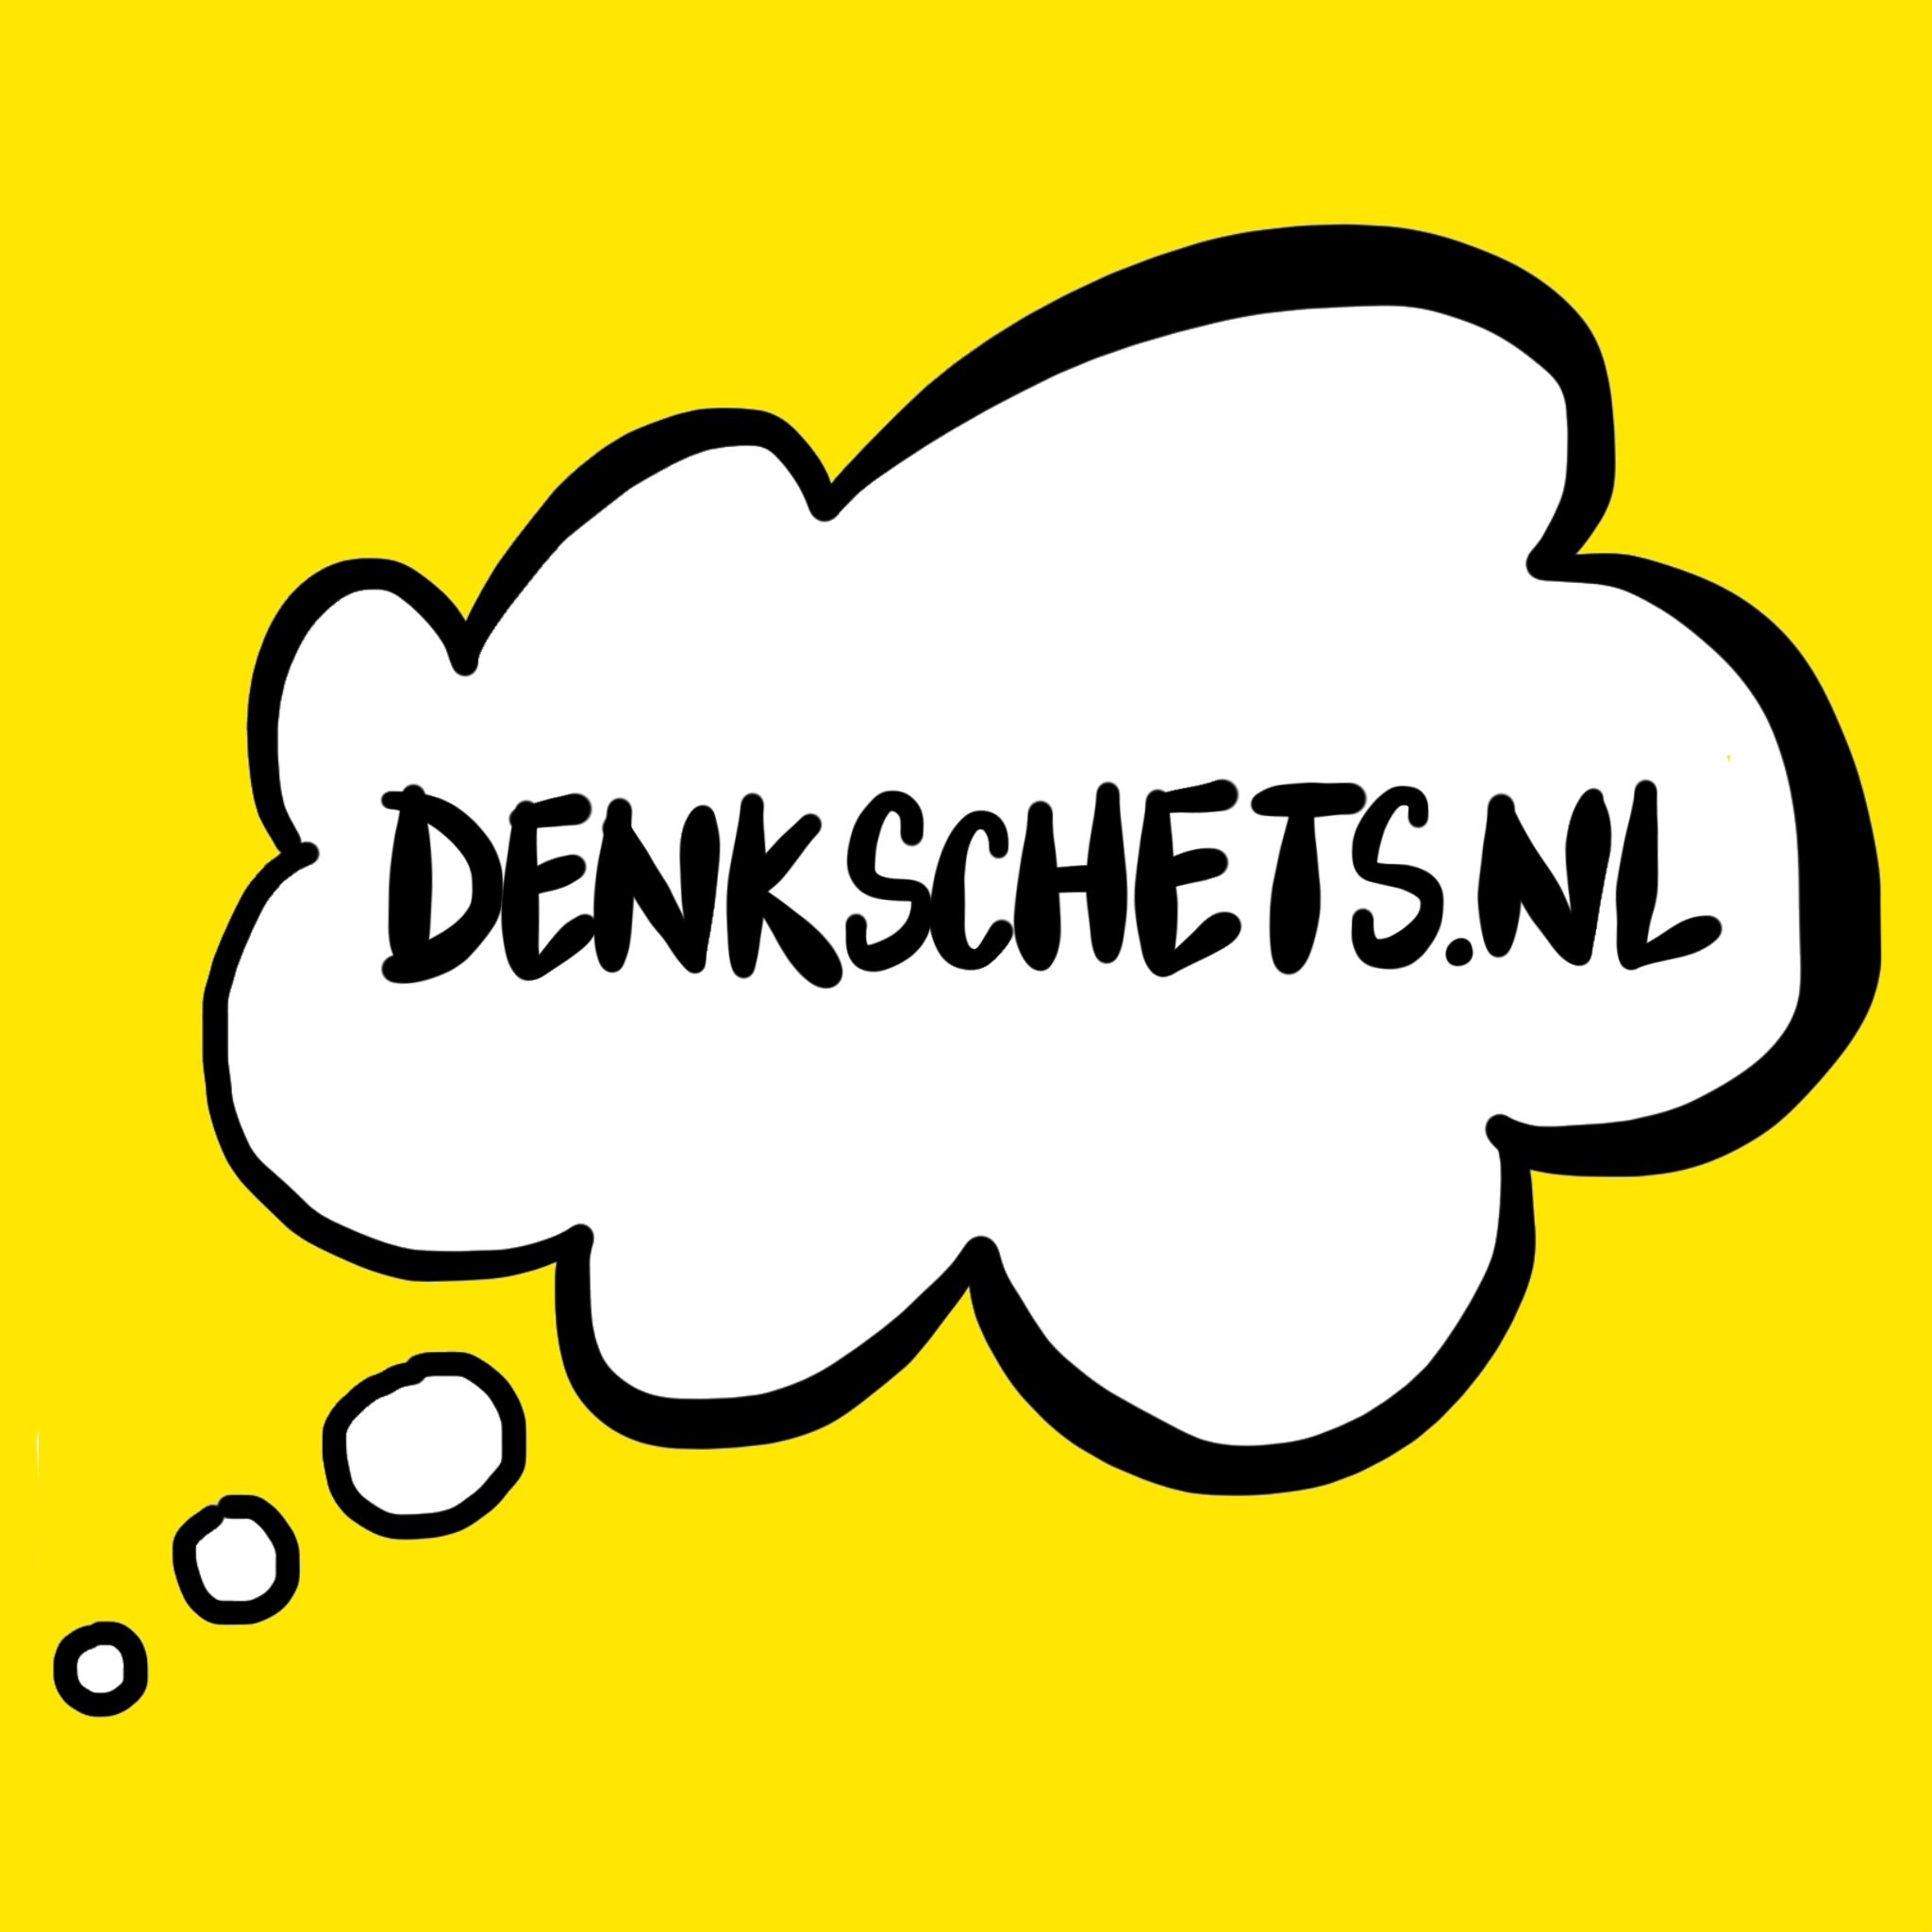 Denkschets.nl